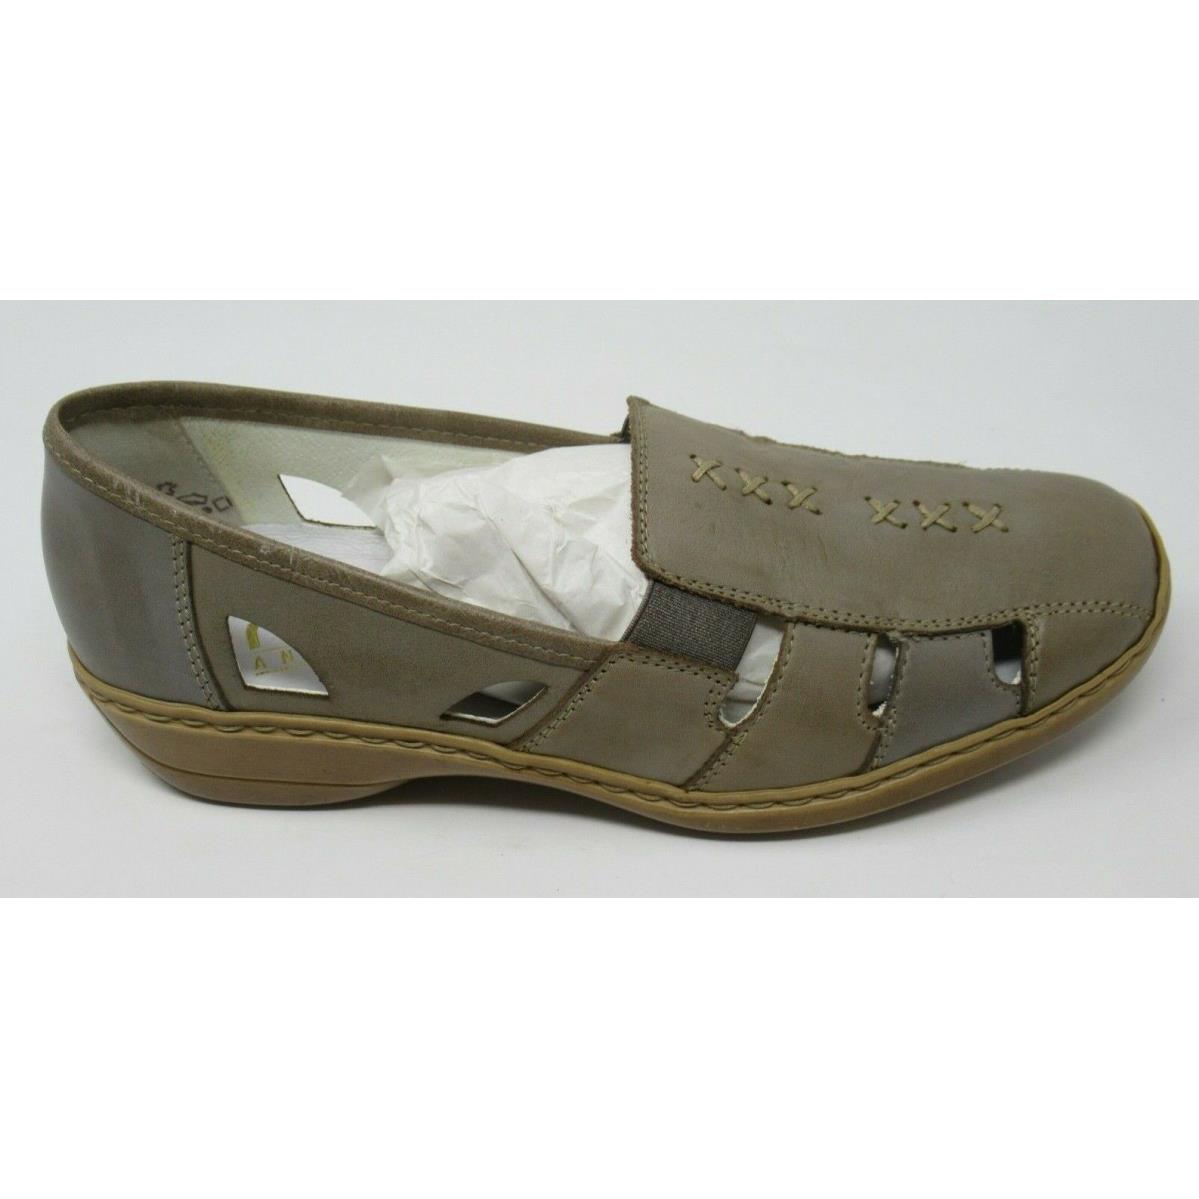 Rieker Women`s 41385 Beige Lea. Slip-on Spring/summer Loafers Shoes SZ 37 US 6